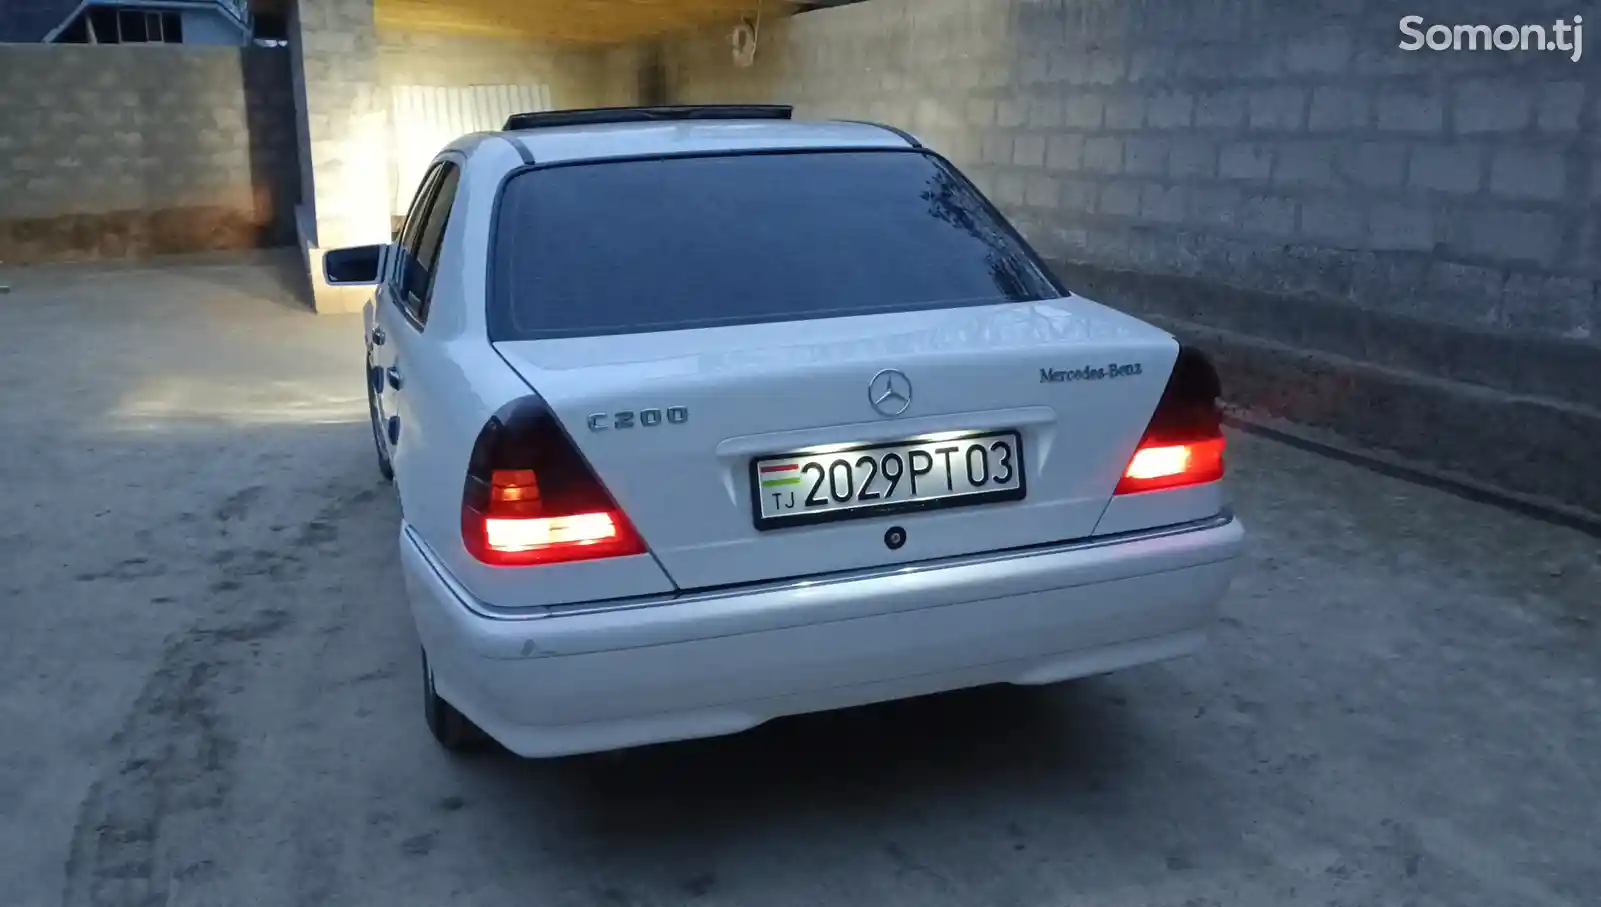 Mercedes-Benz C class, 1998-12